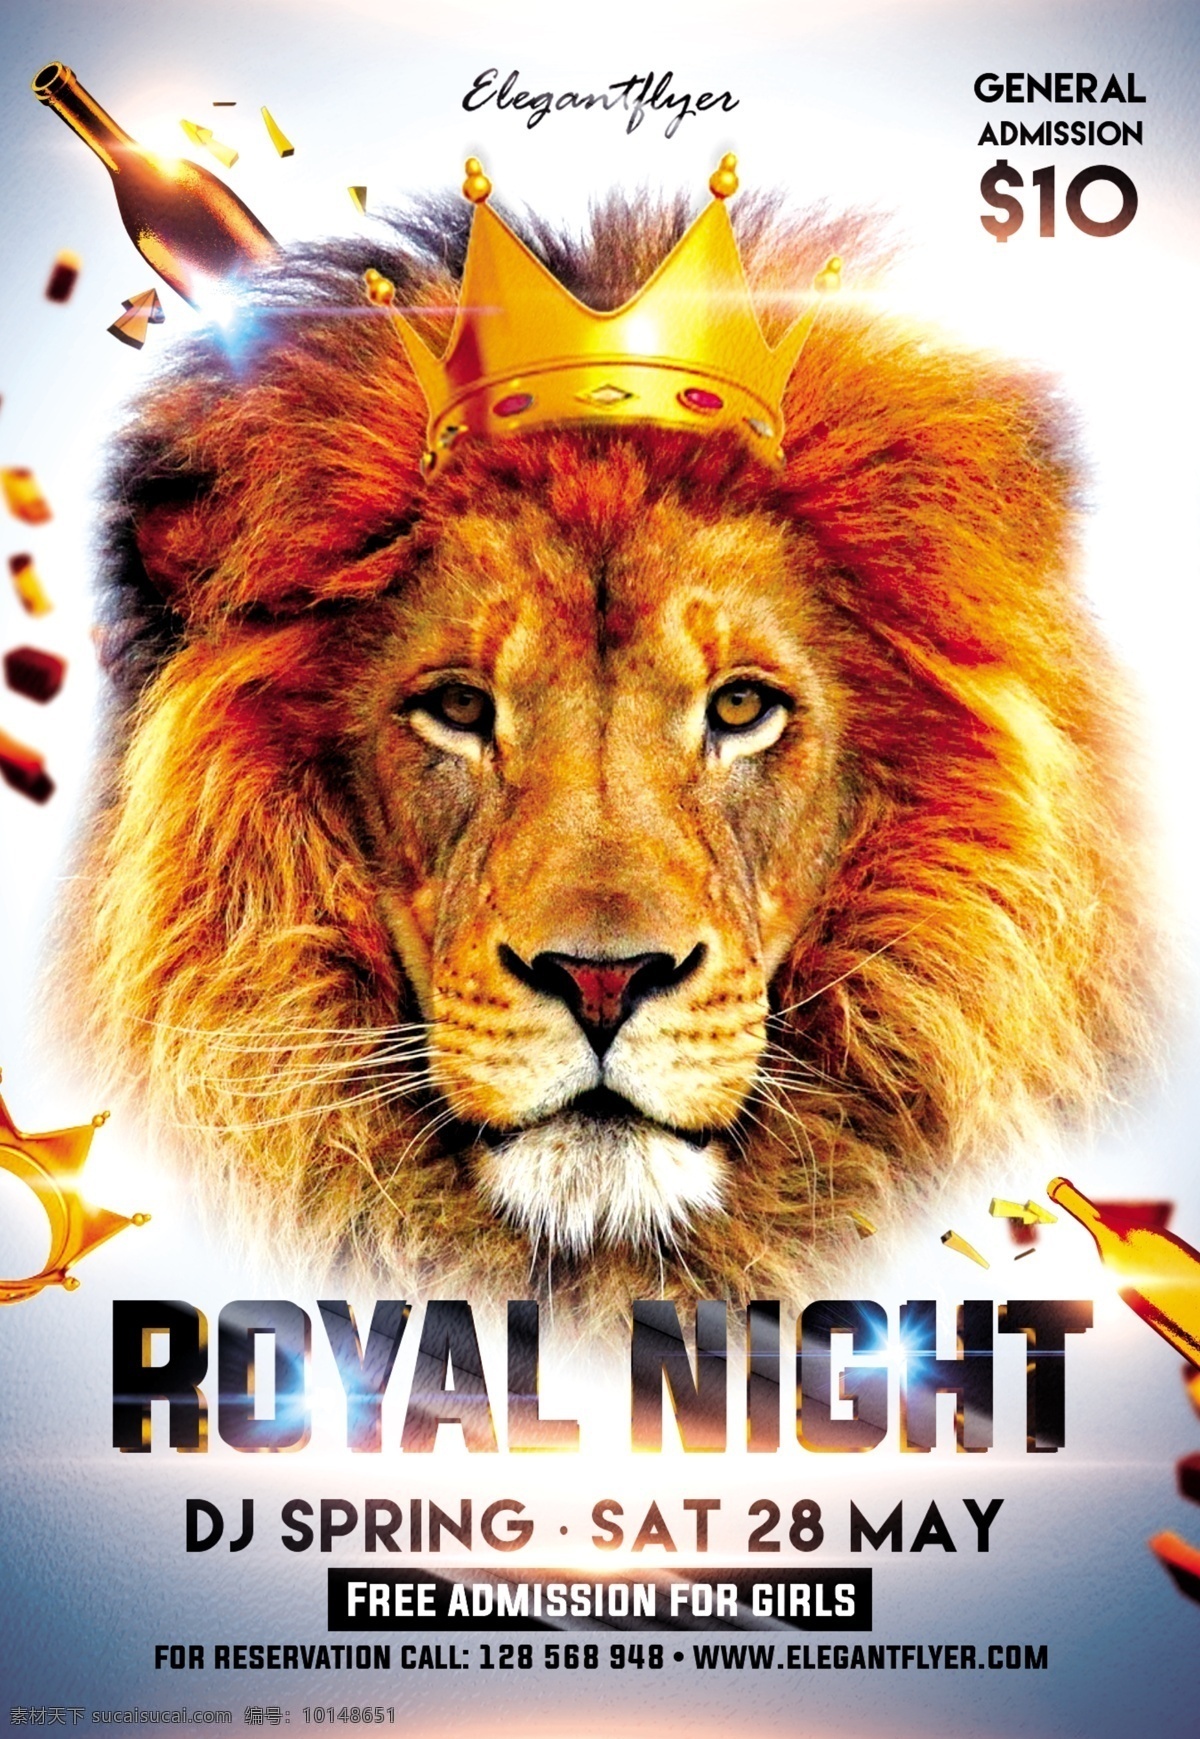 派对海报设计 派对 海报 模版 市值 雄狮 王者 皇家 皇冠 酒 威士忌 狮子